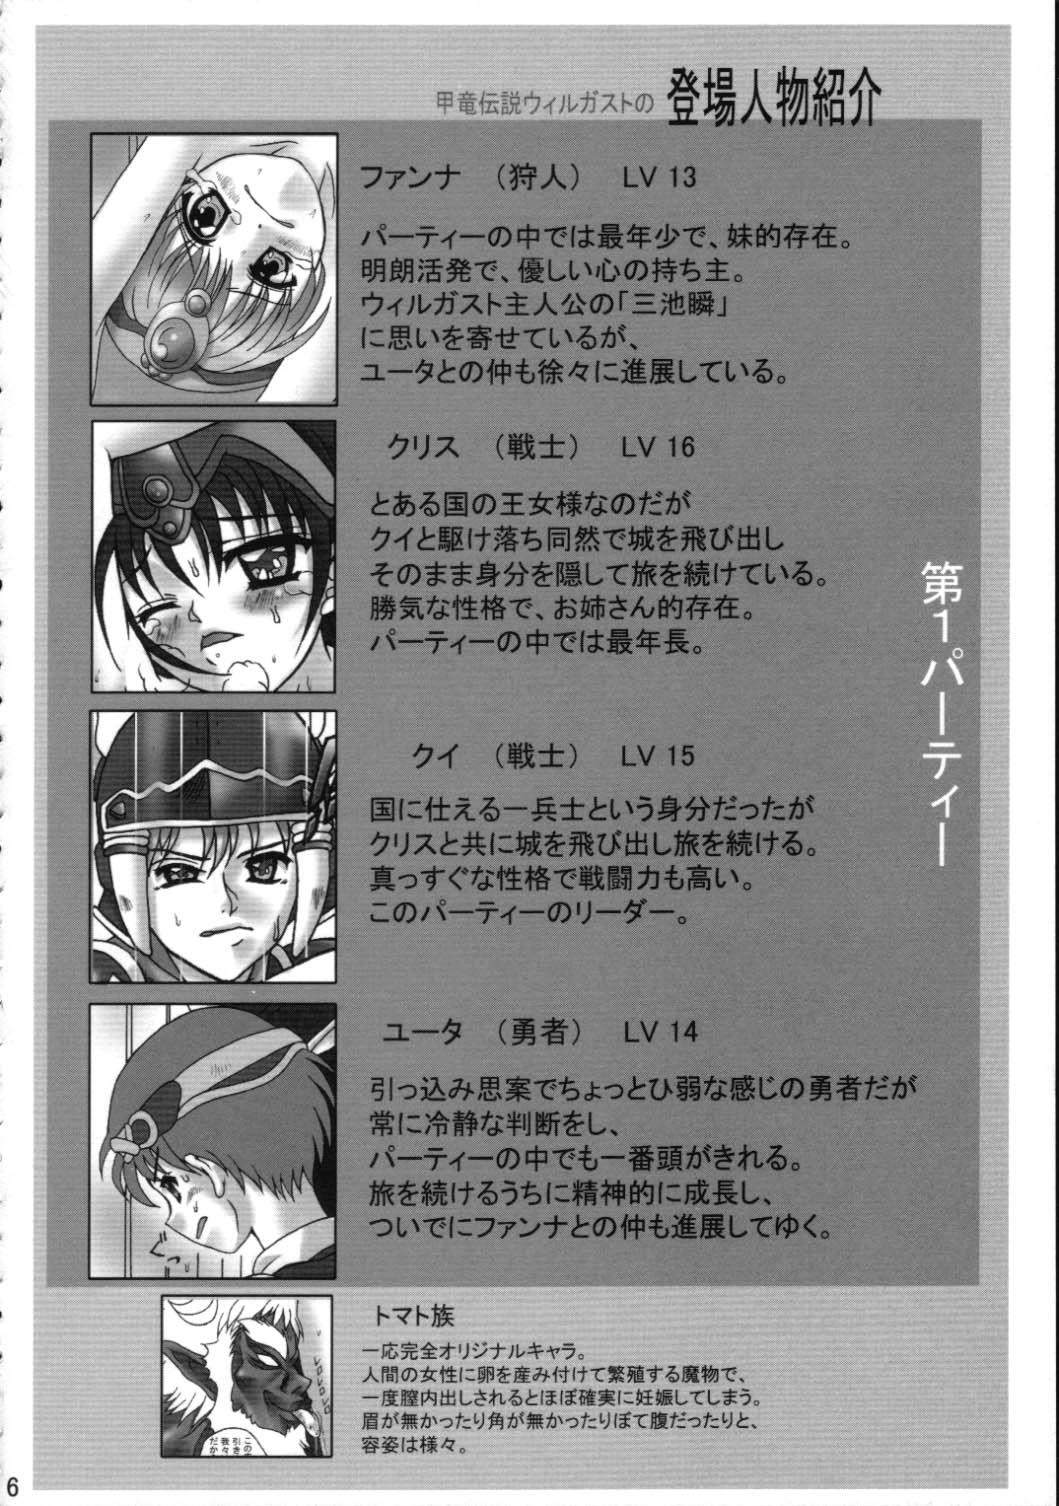 Blowjob Toraware no Shoujo - Kouryuu densetsu villgust Calle - Page 5